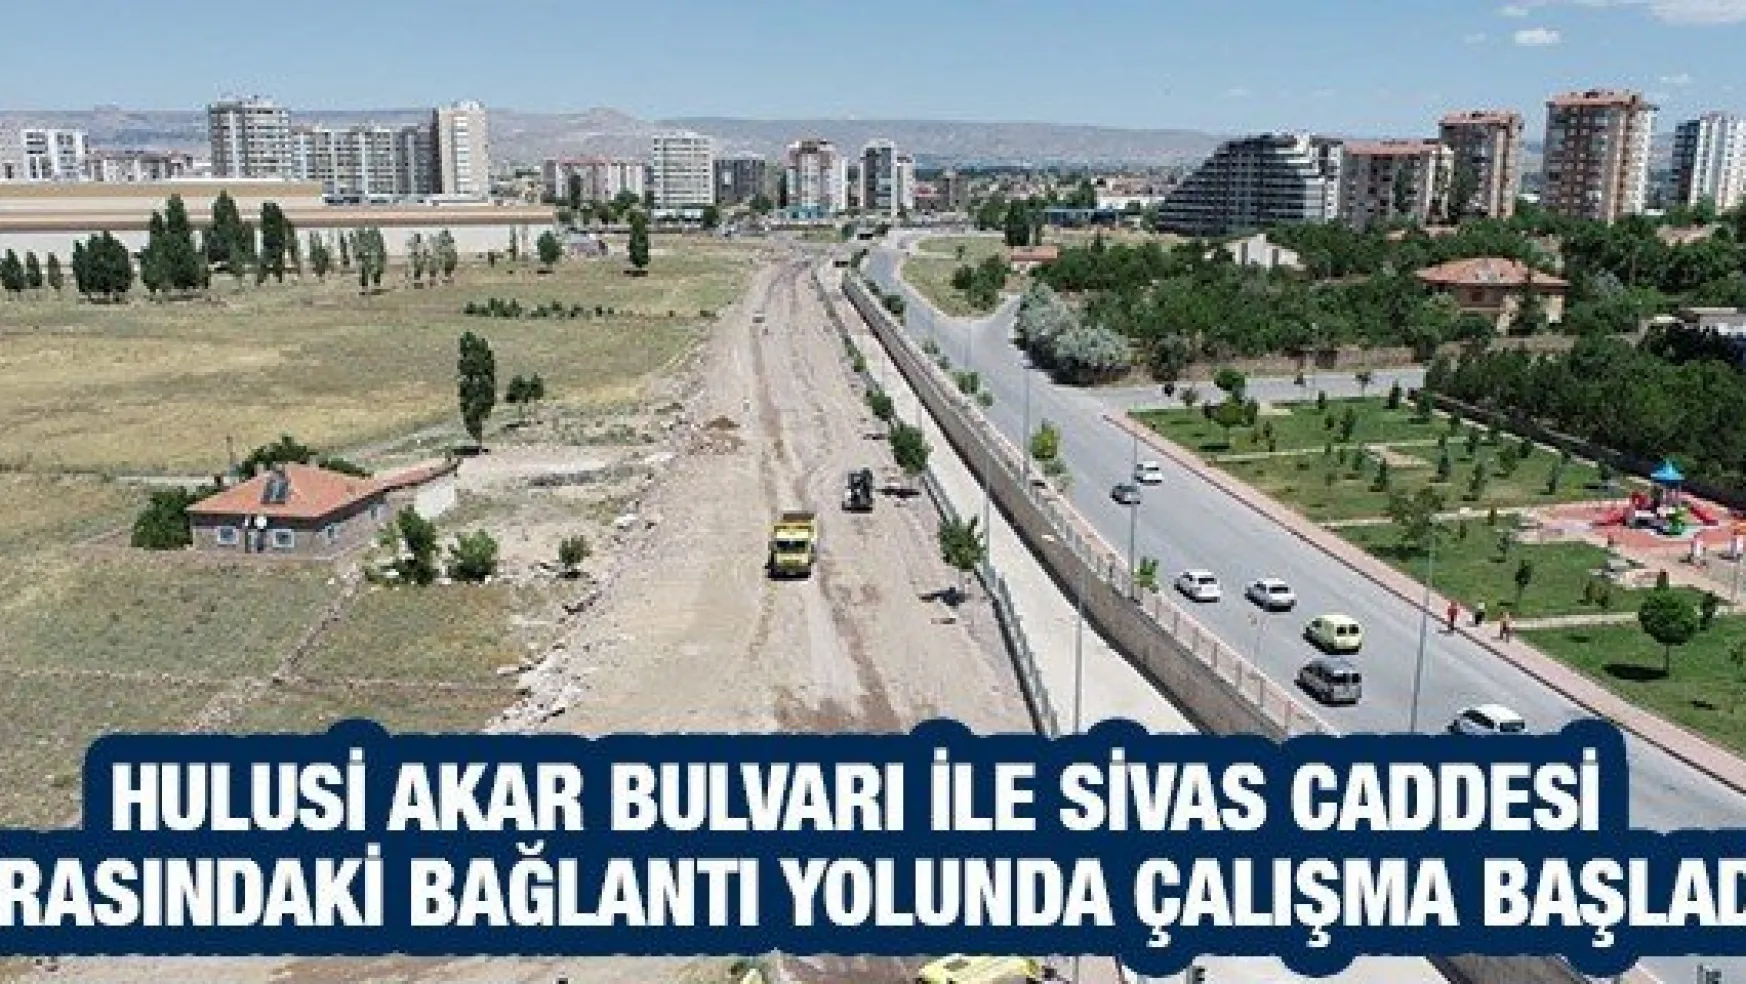 Hulusi Akar Bulvarı ile Sivas Caddesi arasındaki bağlantı yolunda çalışma başladı